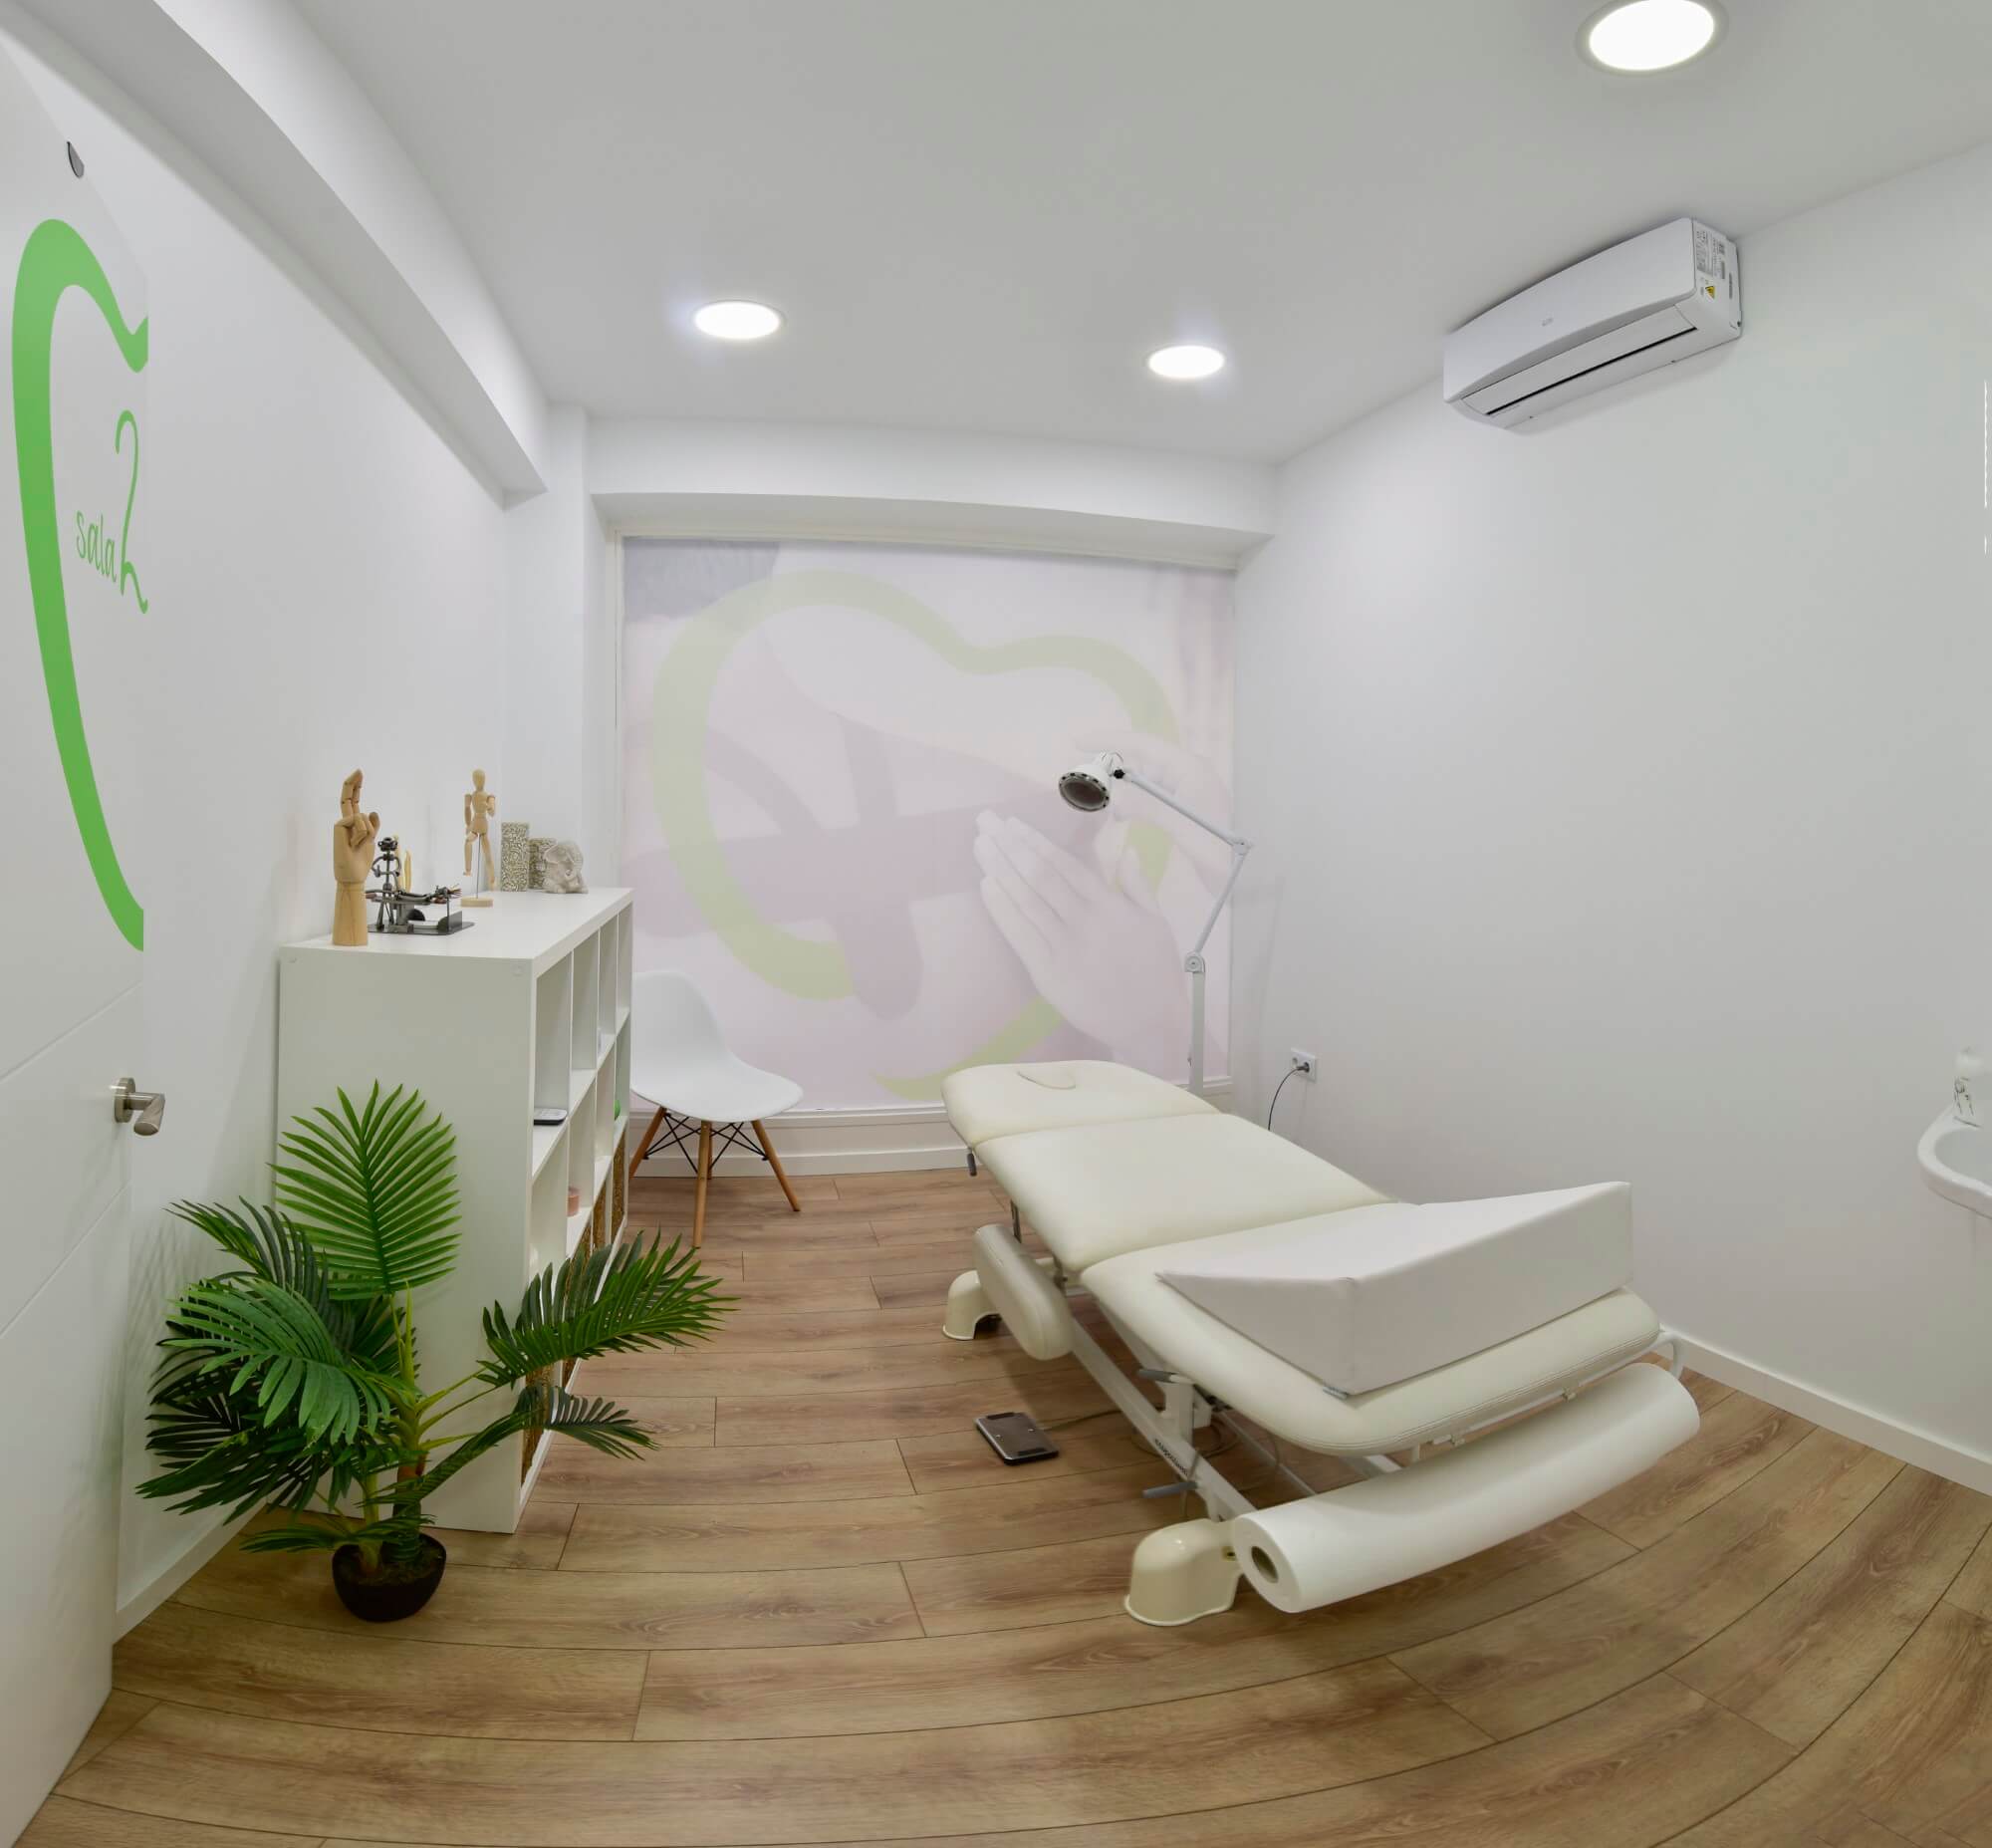 Sala de tratamientos para los pacientes de fisioterapia